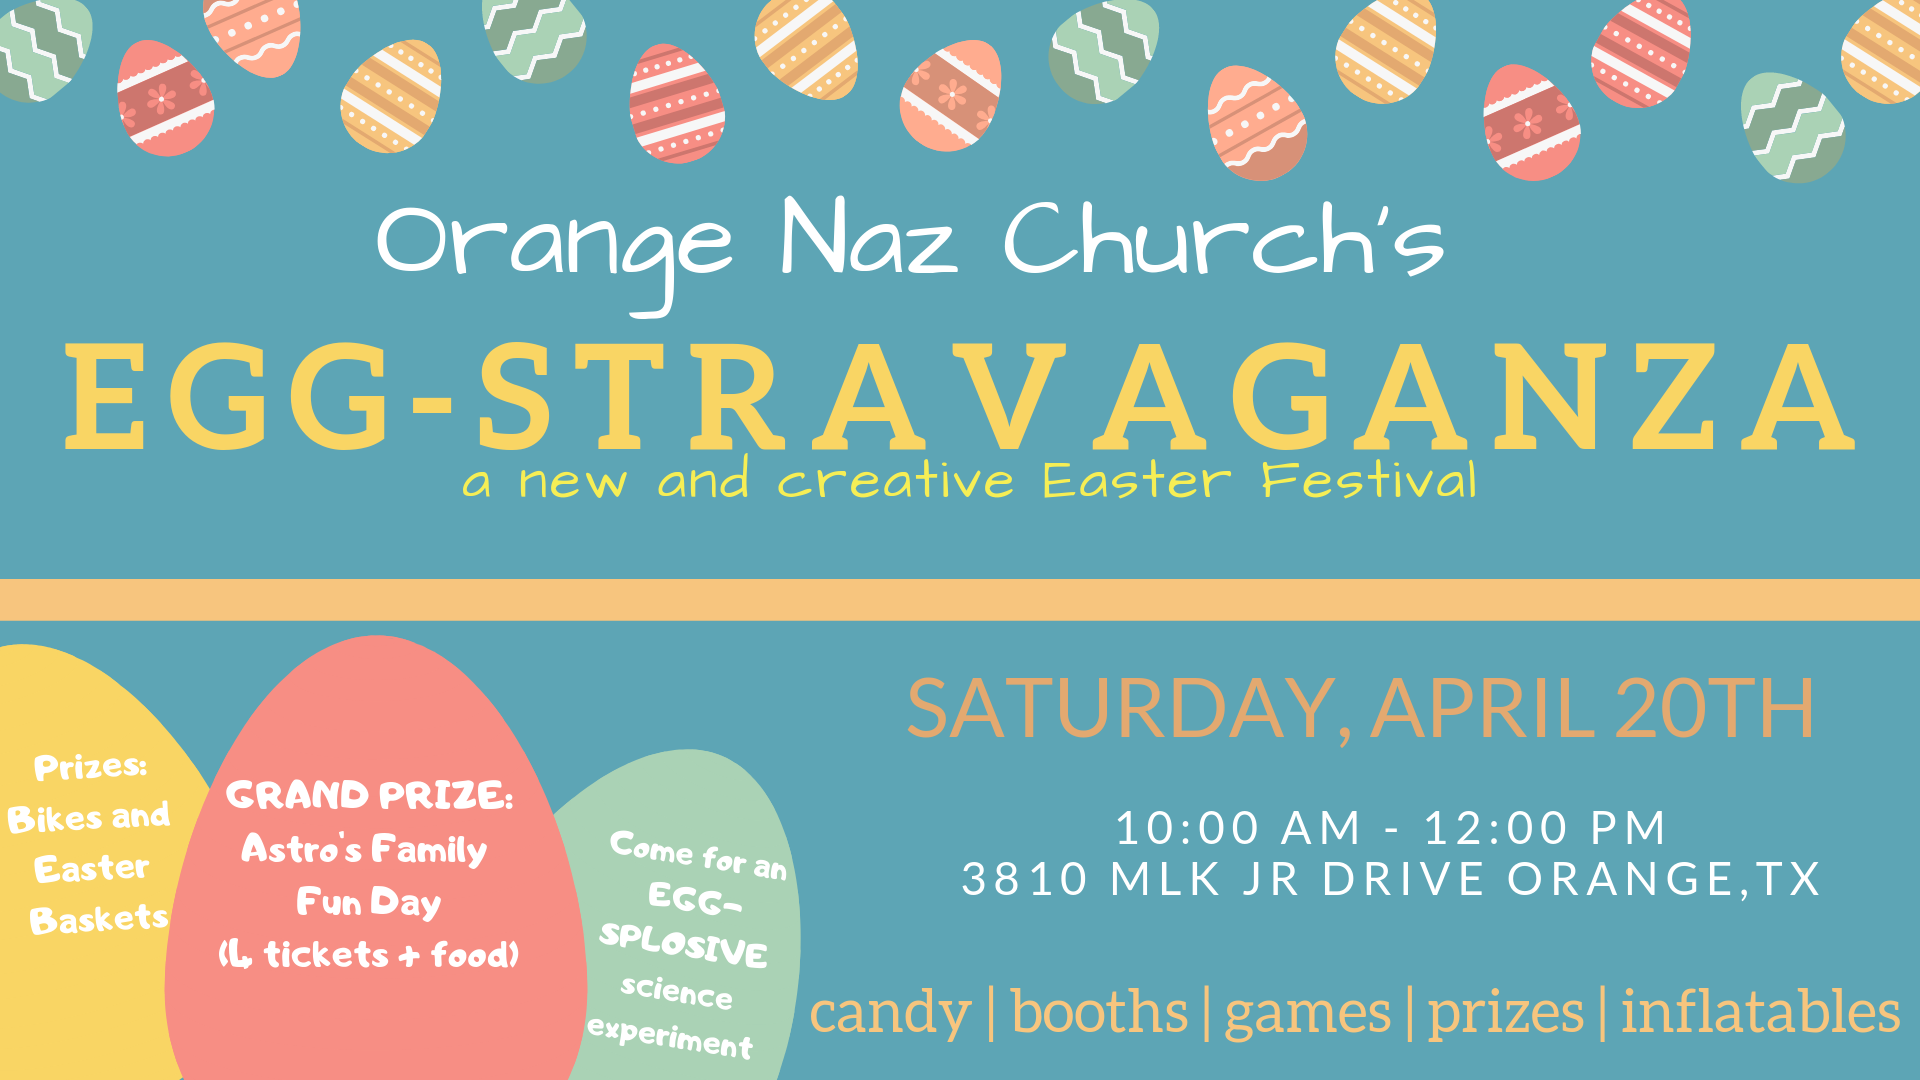 EGG-STRAVAGANZA Easter Festival coming soon - Orange Leader | Orange Leader